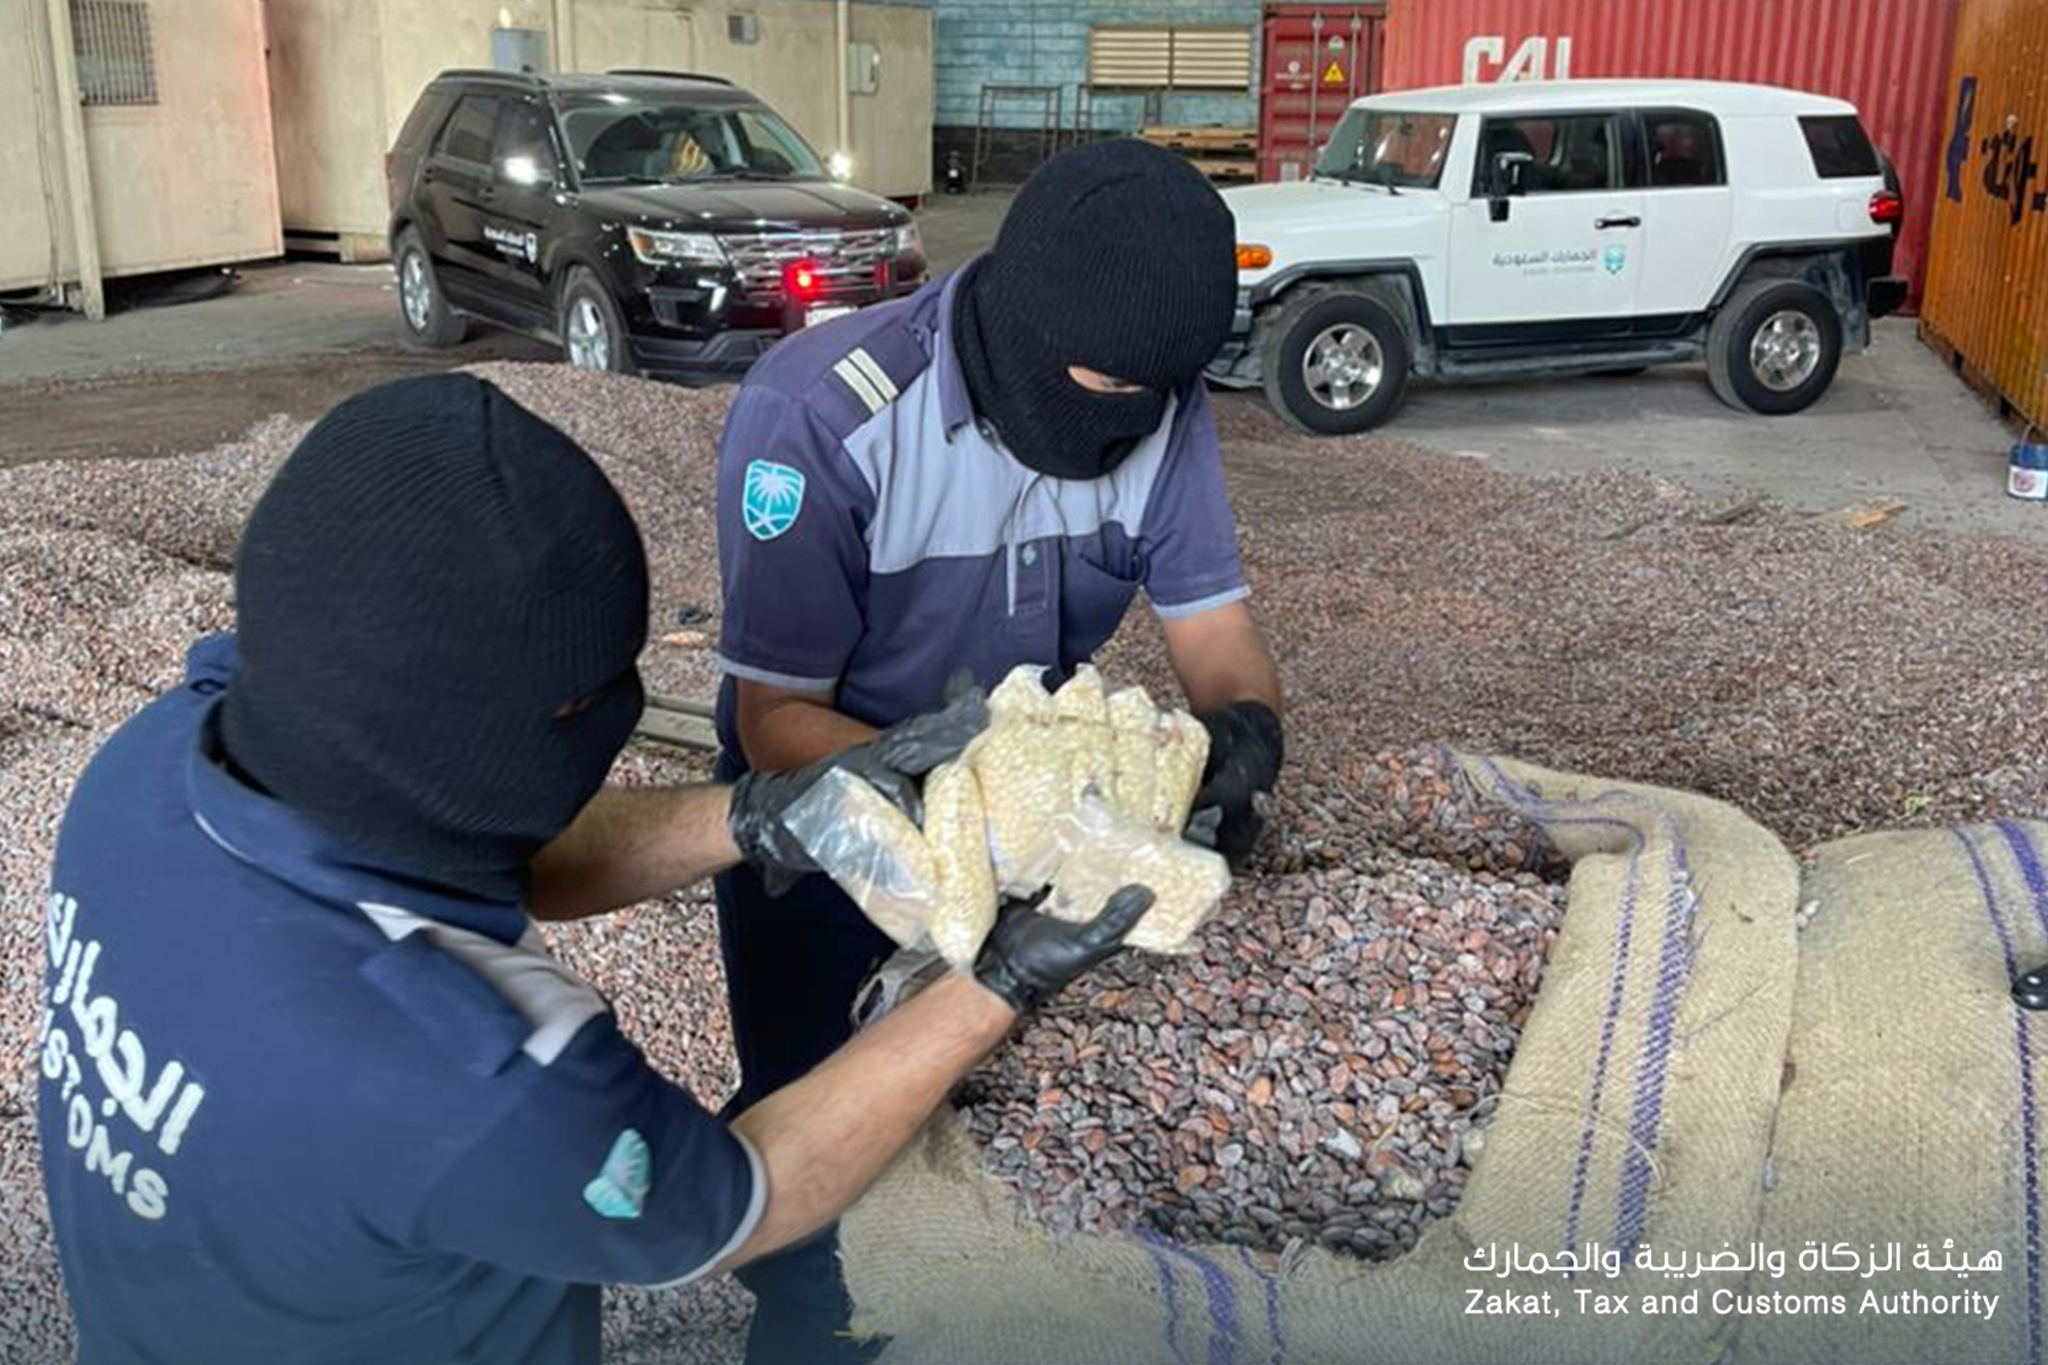 مصدر: المخدرات المخبأة في الكاكاو في ميناء جدة تابعة لـ حزب الله اللبناني